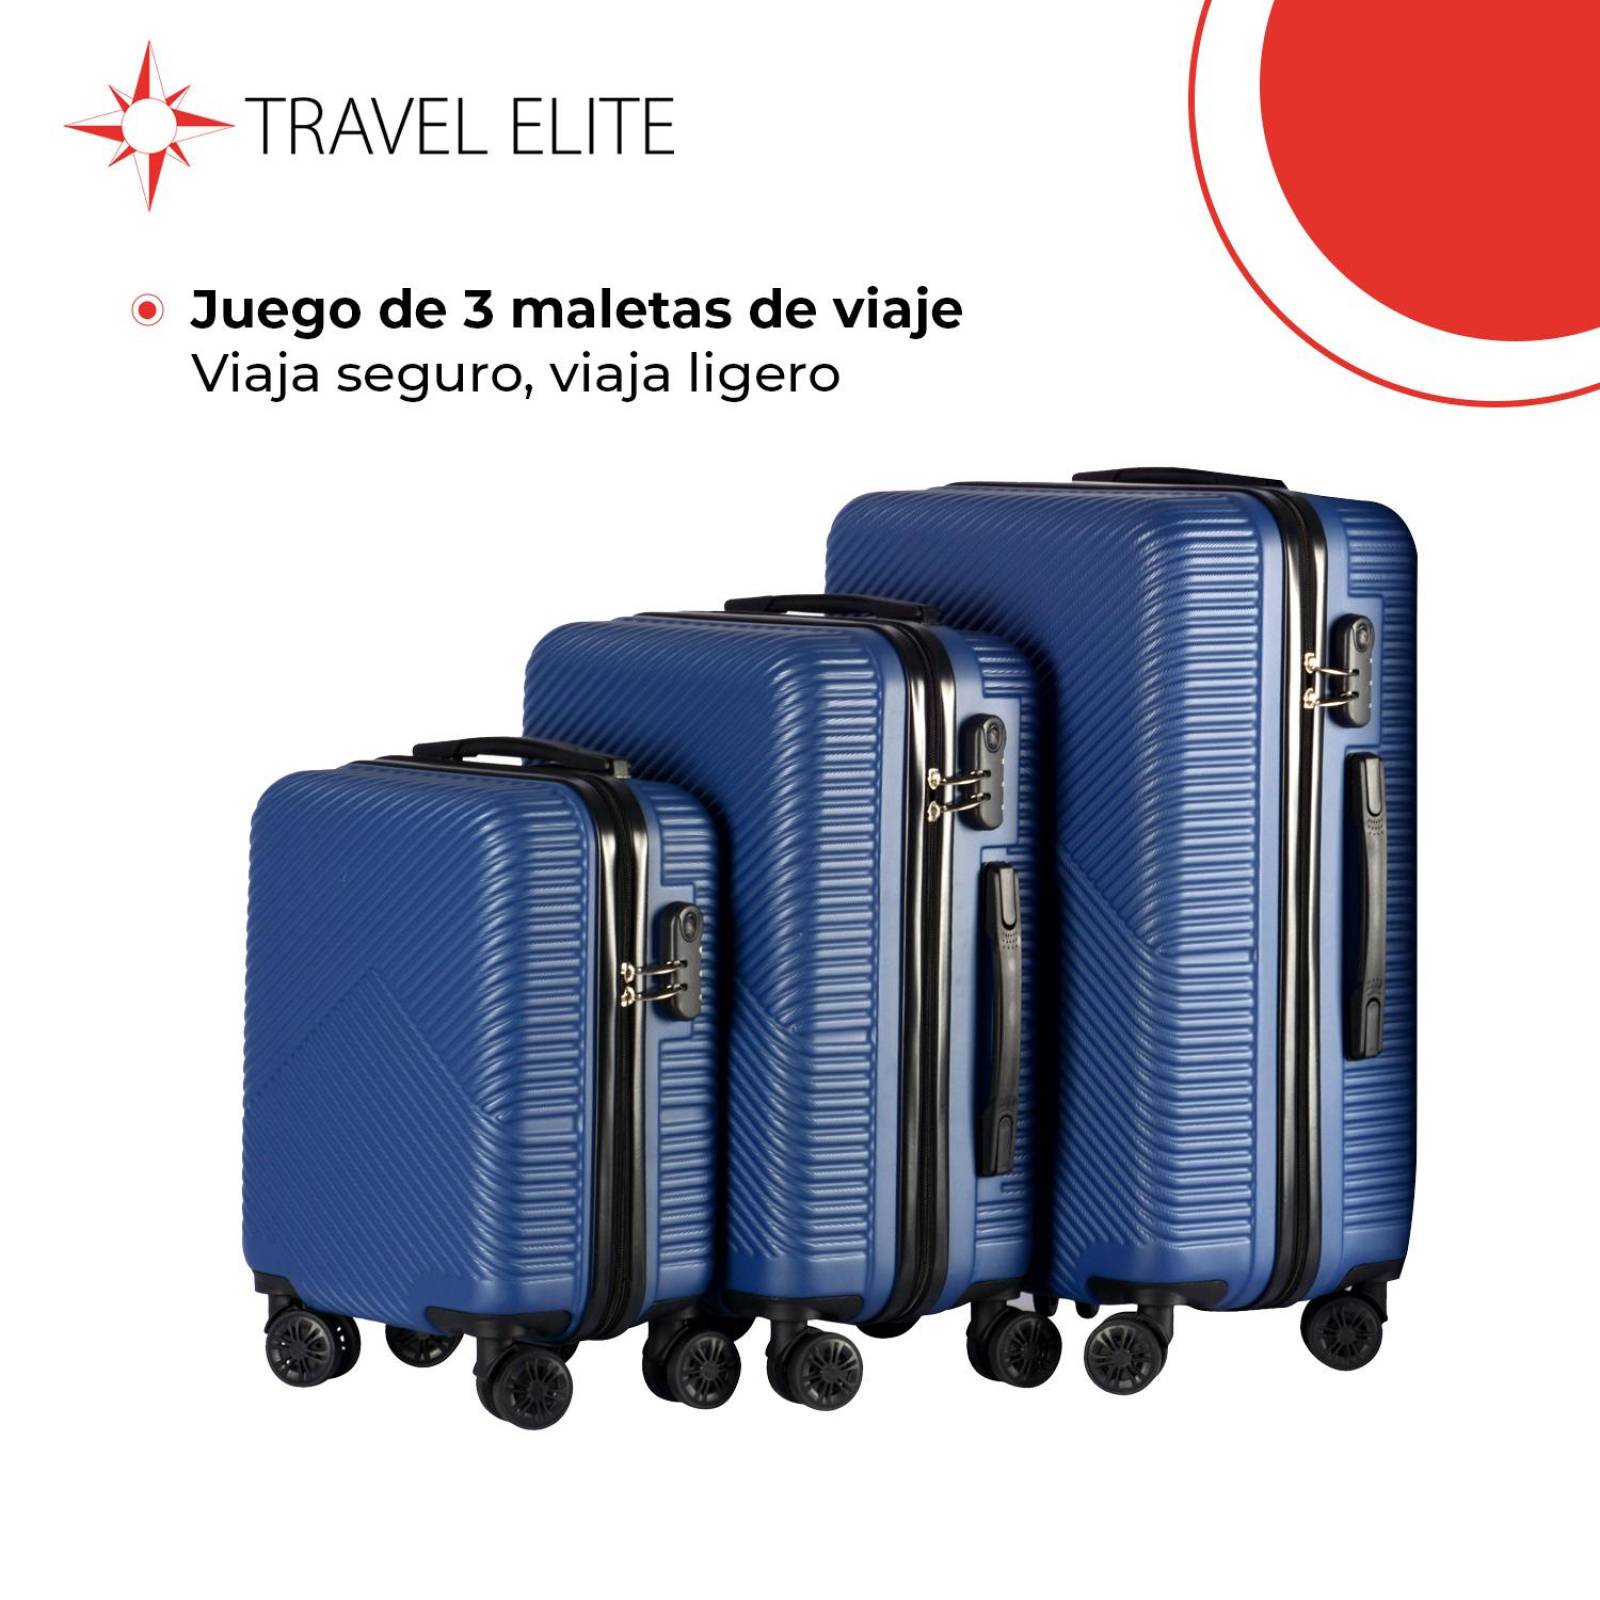 Juego De 3 Maletas De Viaje Azul Travel System